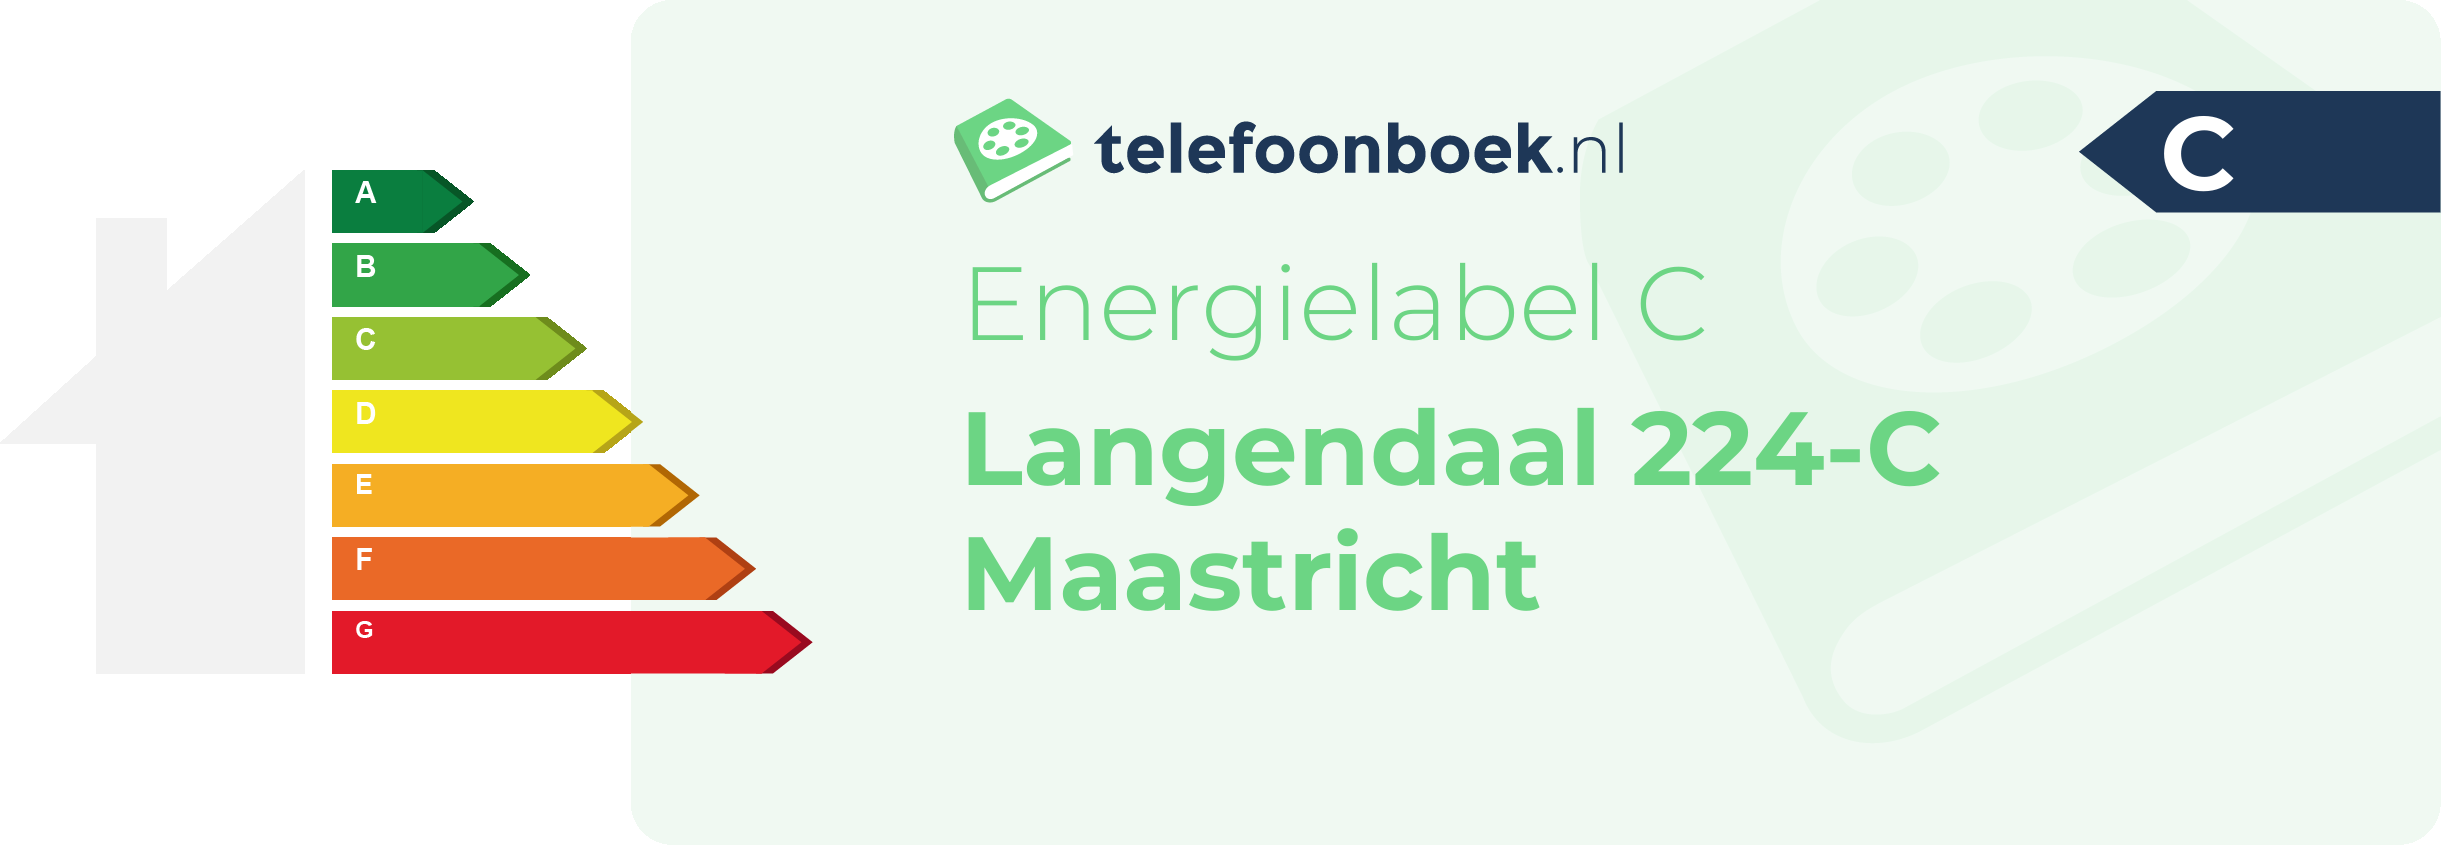 Energielabel Langendaal 224-C Maastricht